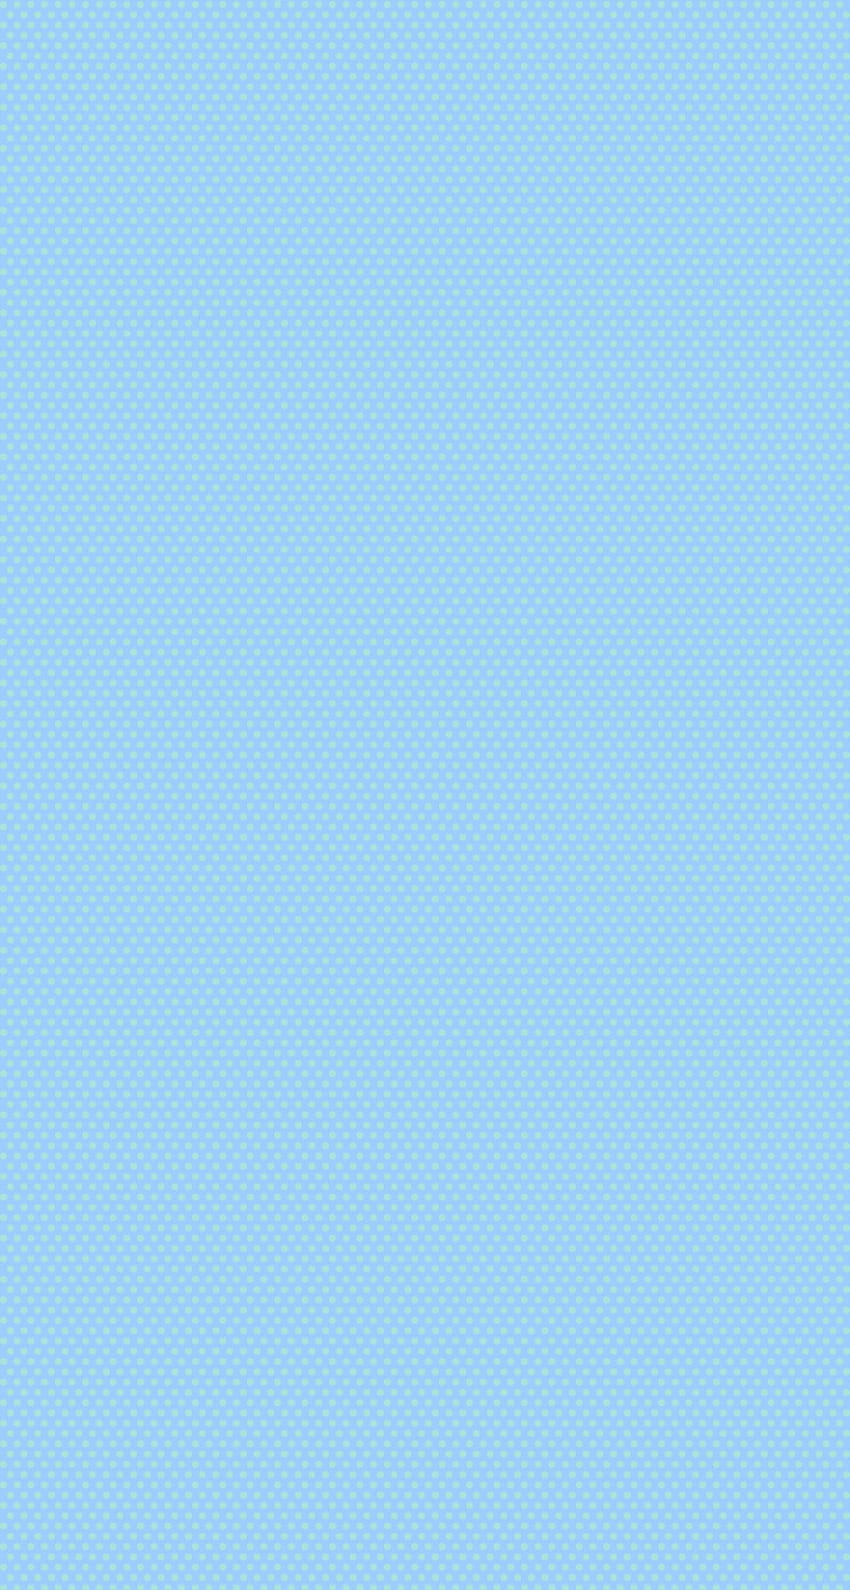 Light Blue Gradient 4K Wallpaper - Baltana